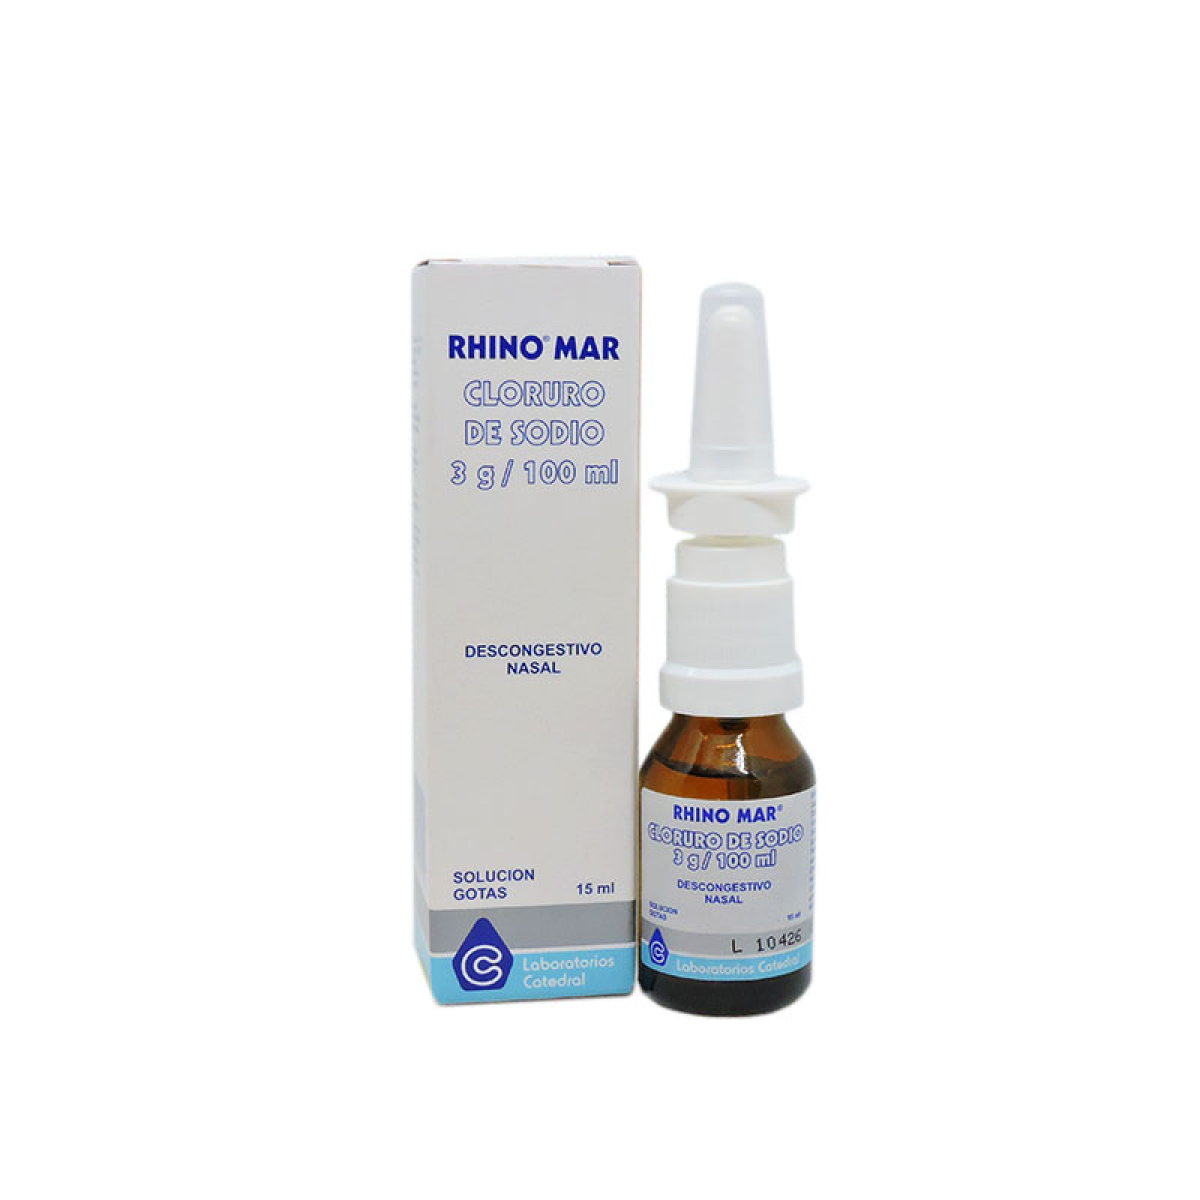 Spray Nasal Parsol Antialérgico - 20mL